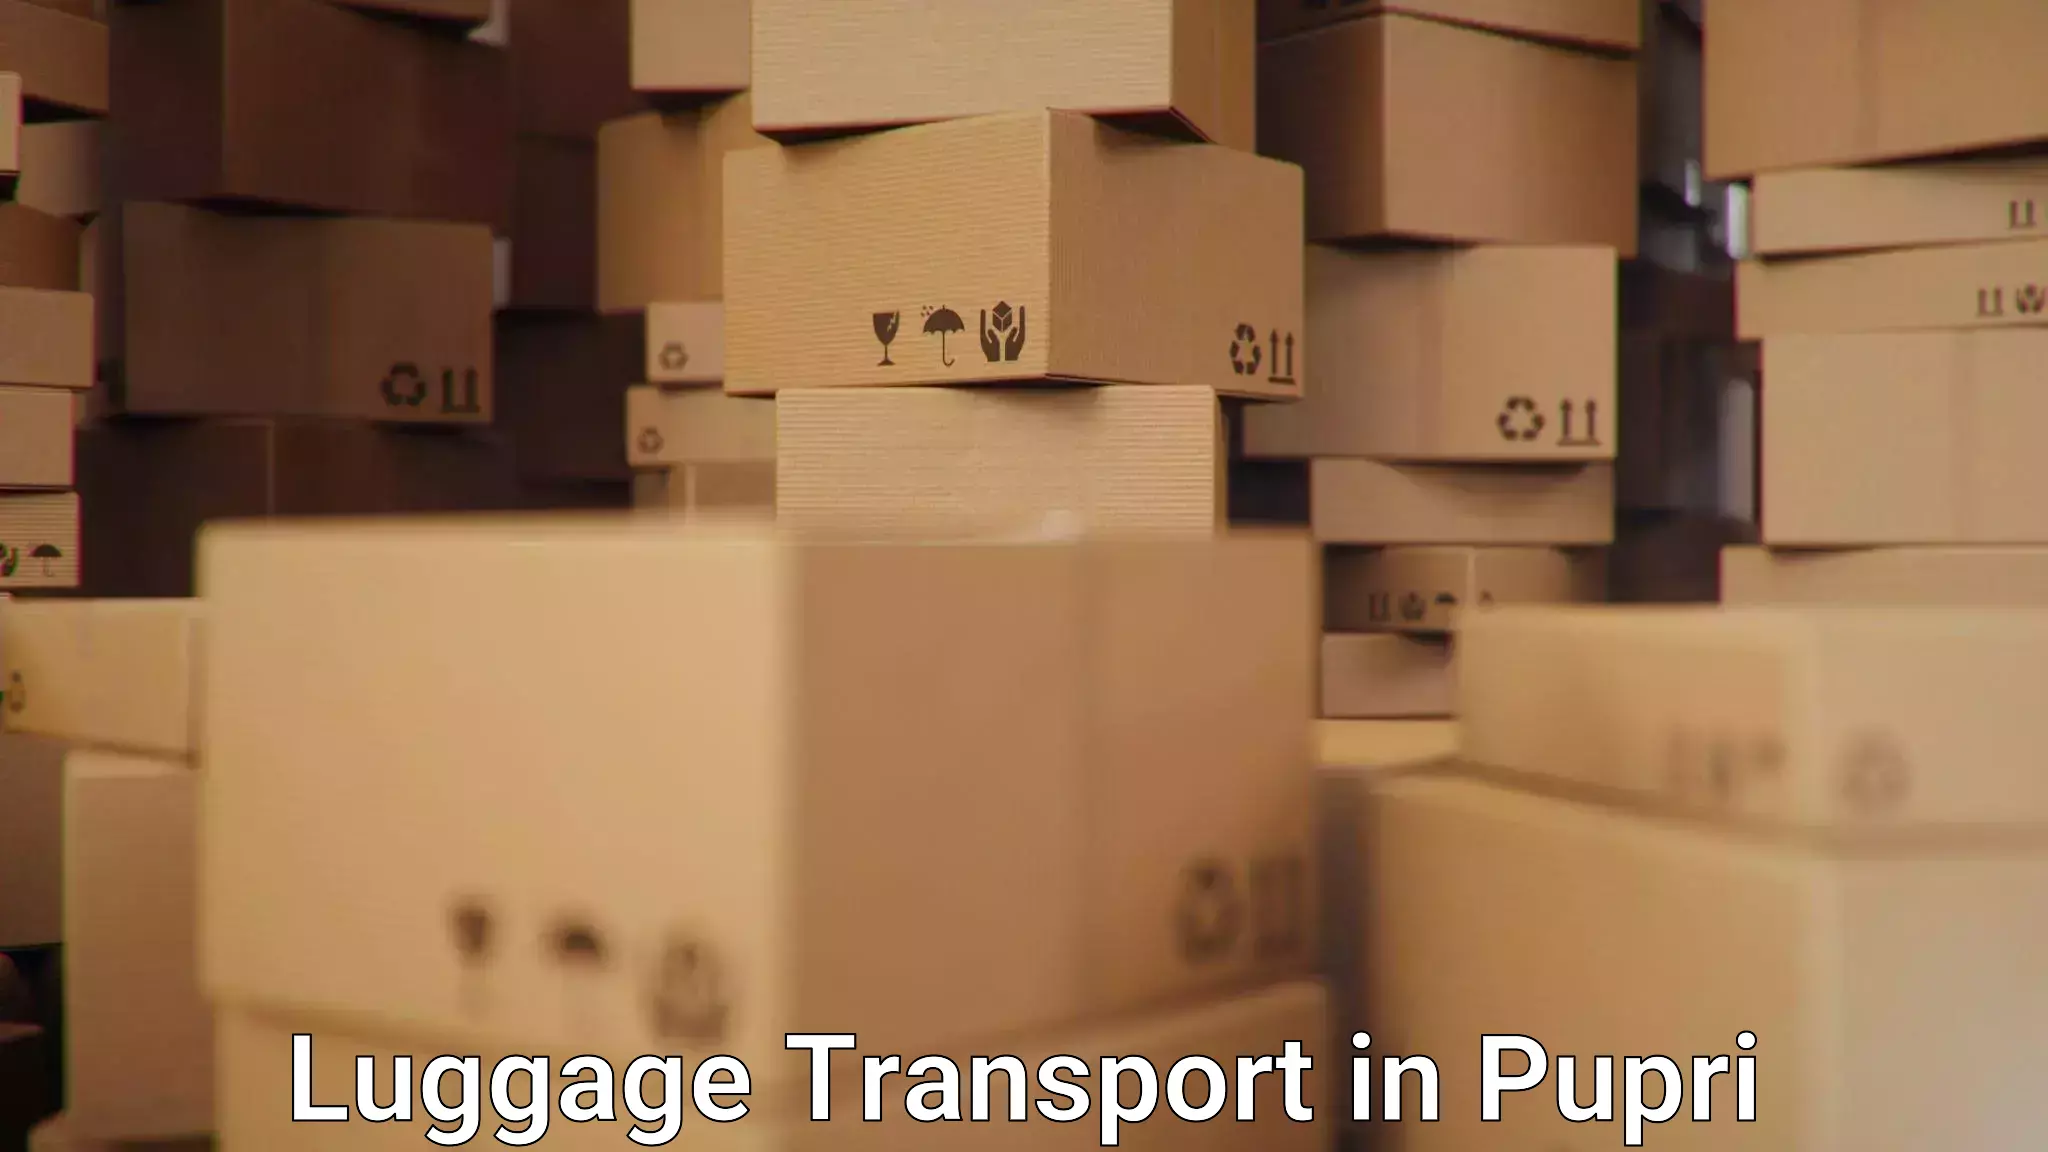 Weekend baggage shipping in Pupri